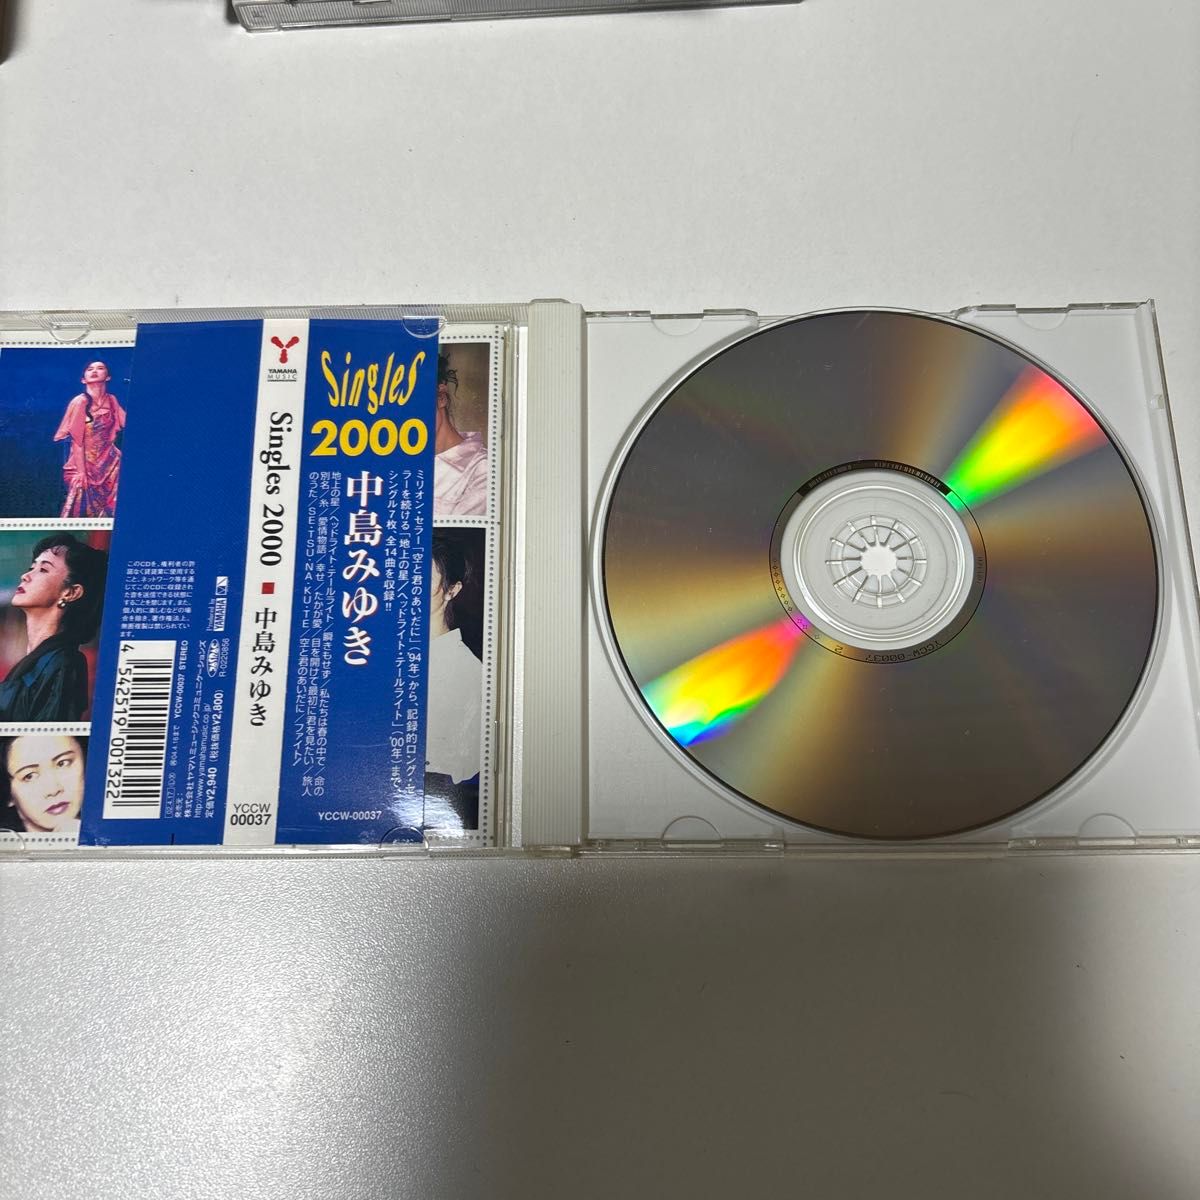 中島みゆき ベストアルバム 【 Singles 2000 】